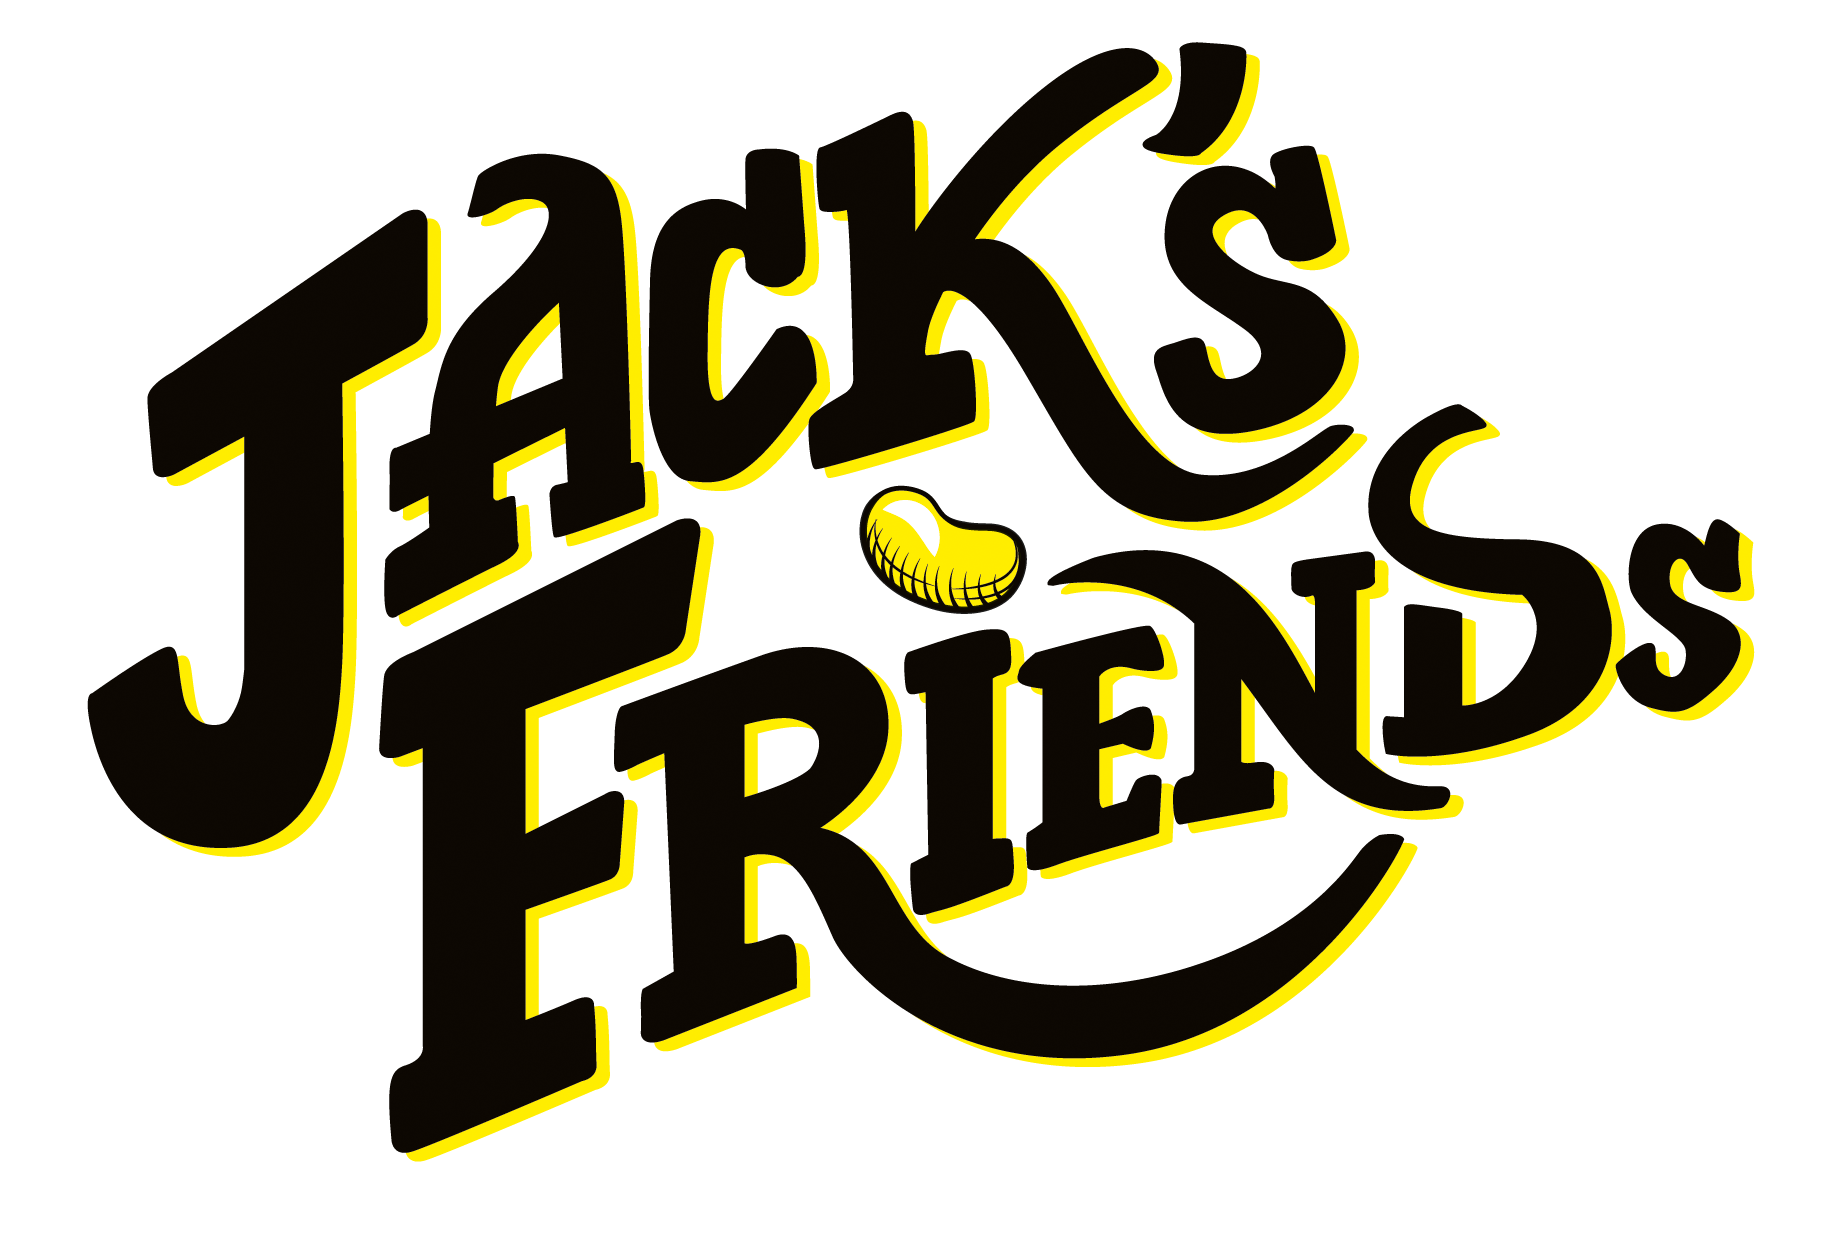 piggybank games, creators of jacks friends.